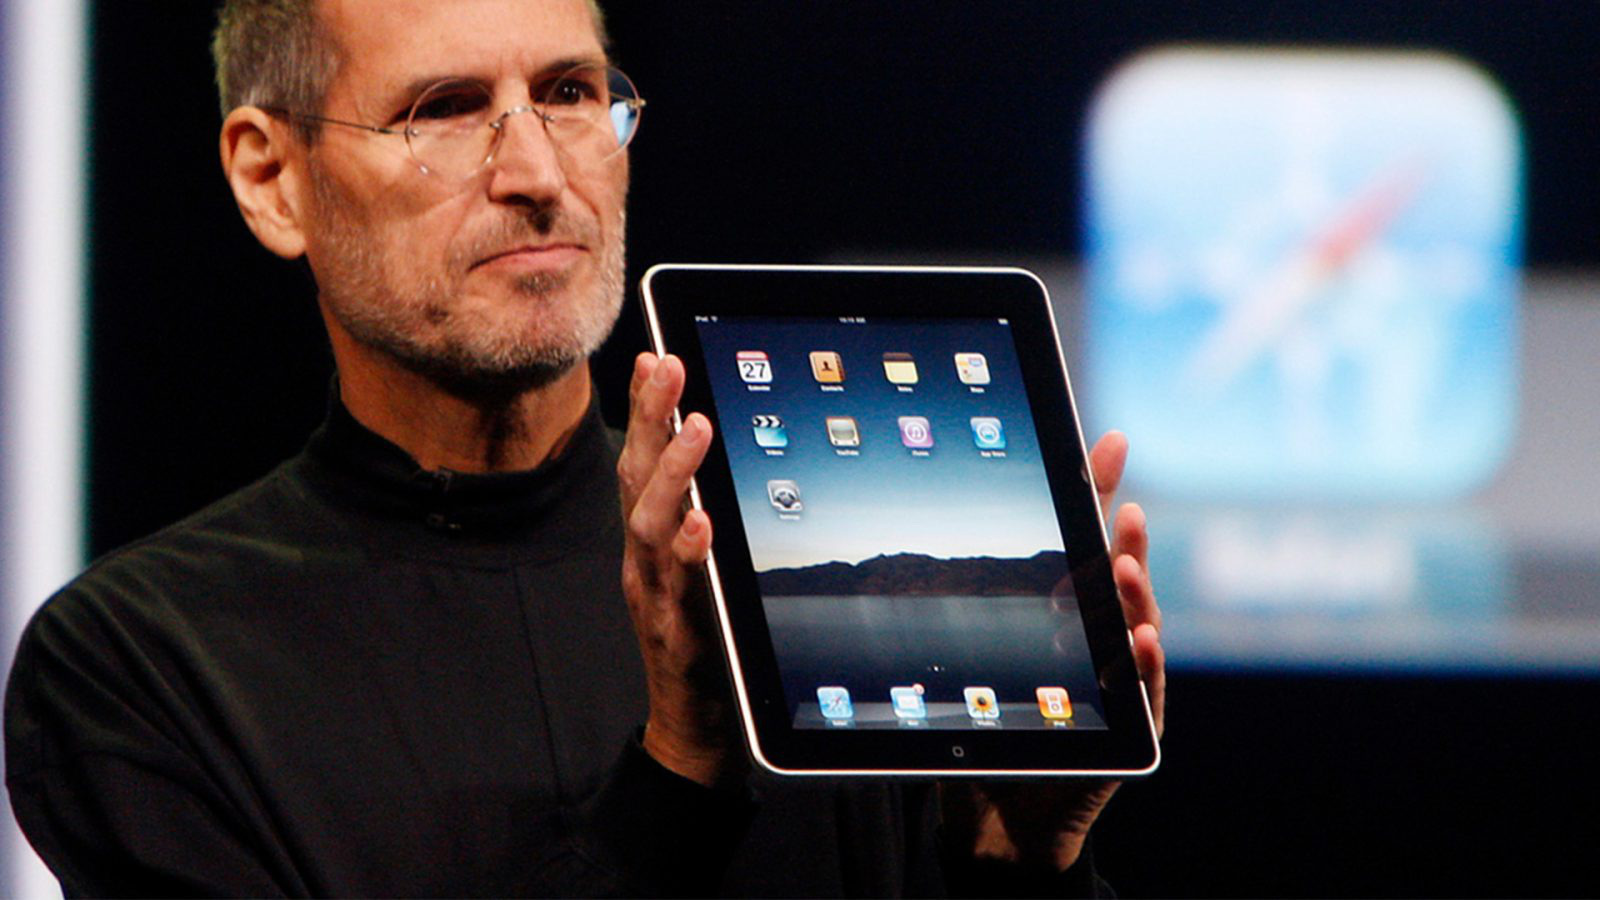 Tạp chí Times bình
chọn iPad, Apple Watch và AirPods là những thiết bị tốt nhất
trong thập kỷ vừa qua